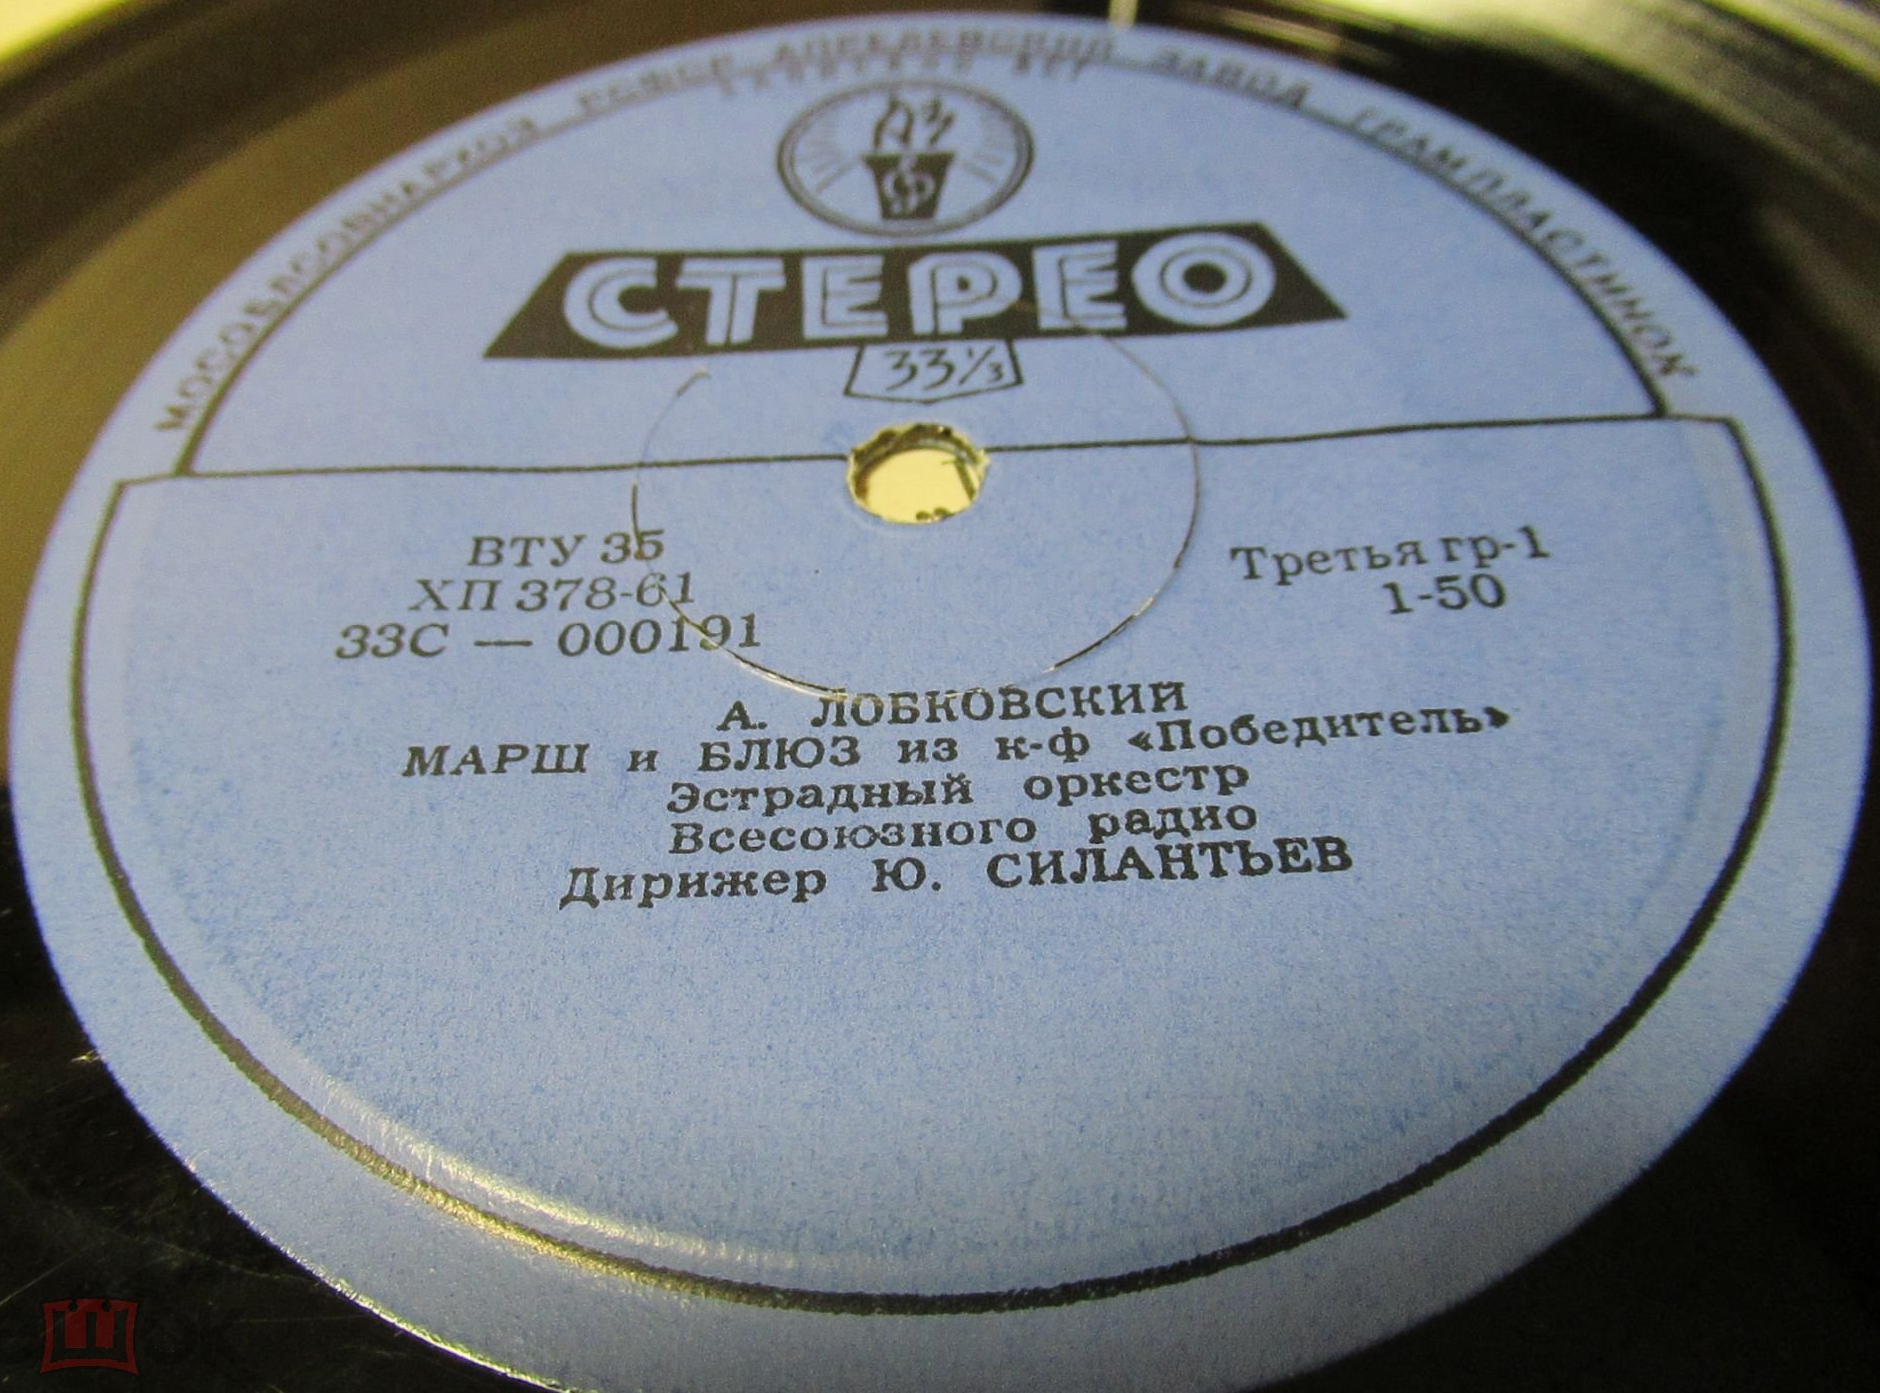 А. ЛОБКОВСКИЙ (1912) - Из музыки к к/ф «Победитель»